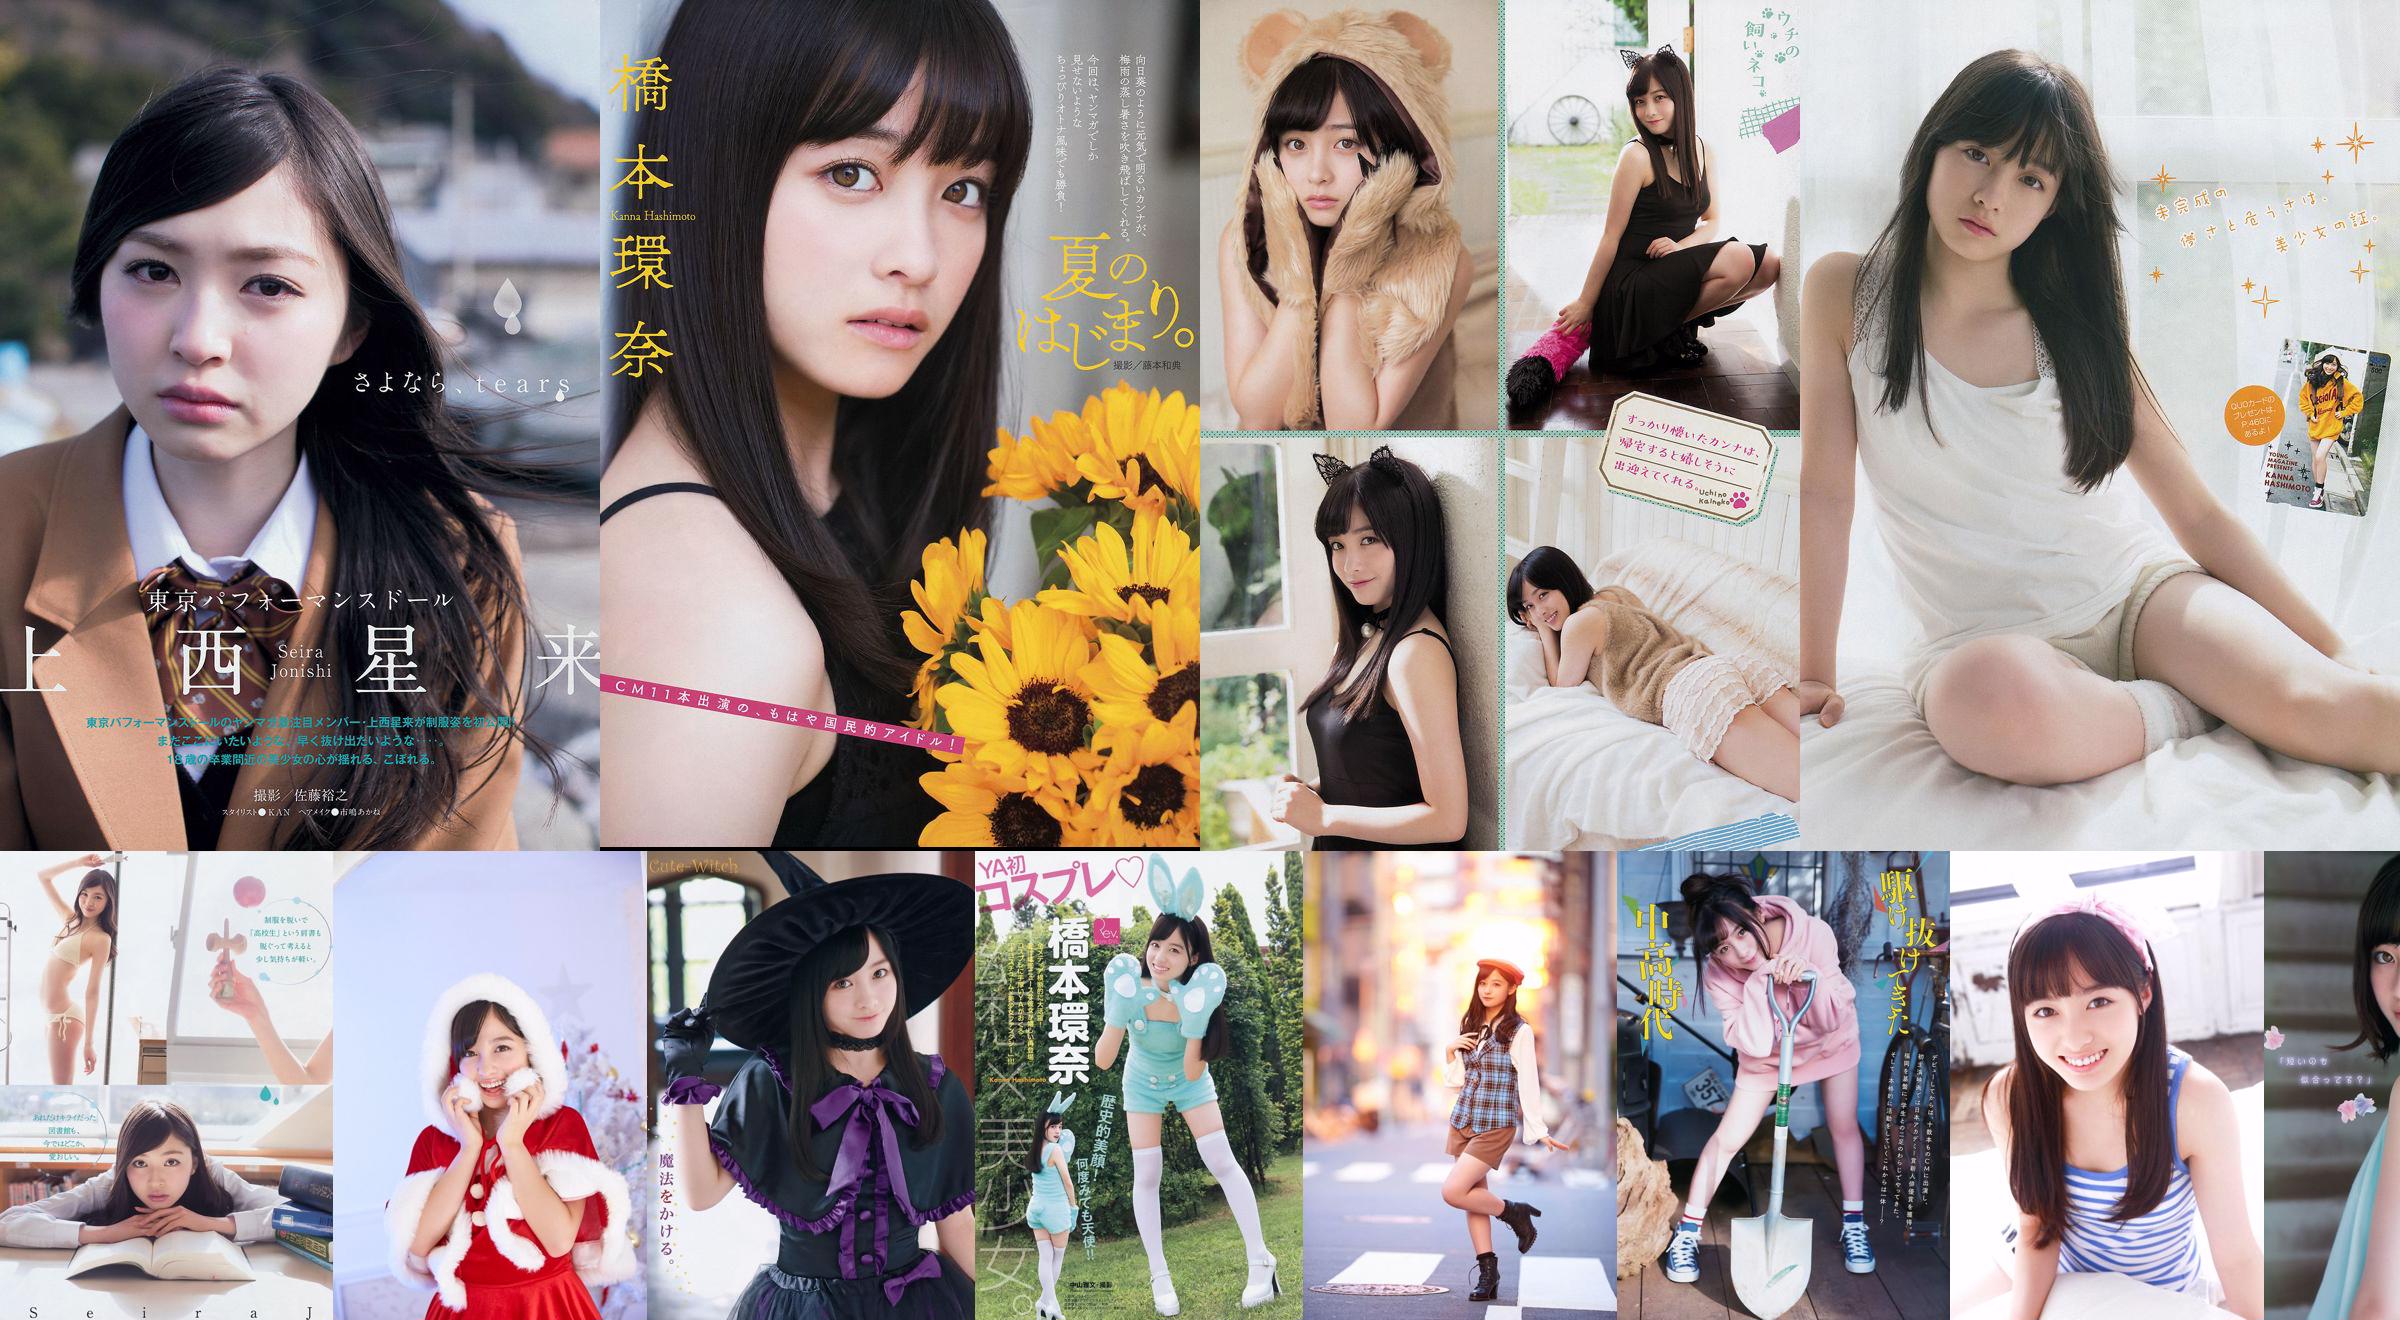 [Young Magazine] Kanna Hashimoto SKANDAL Tokyo Girls 'Style 2015 Nr. 01 Foto No.fa1248 Seite 6